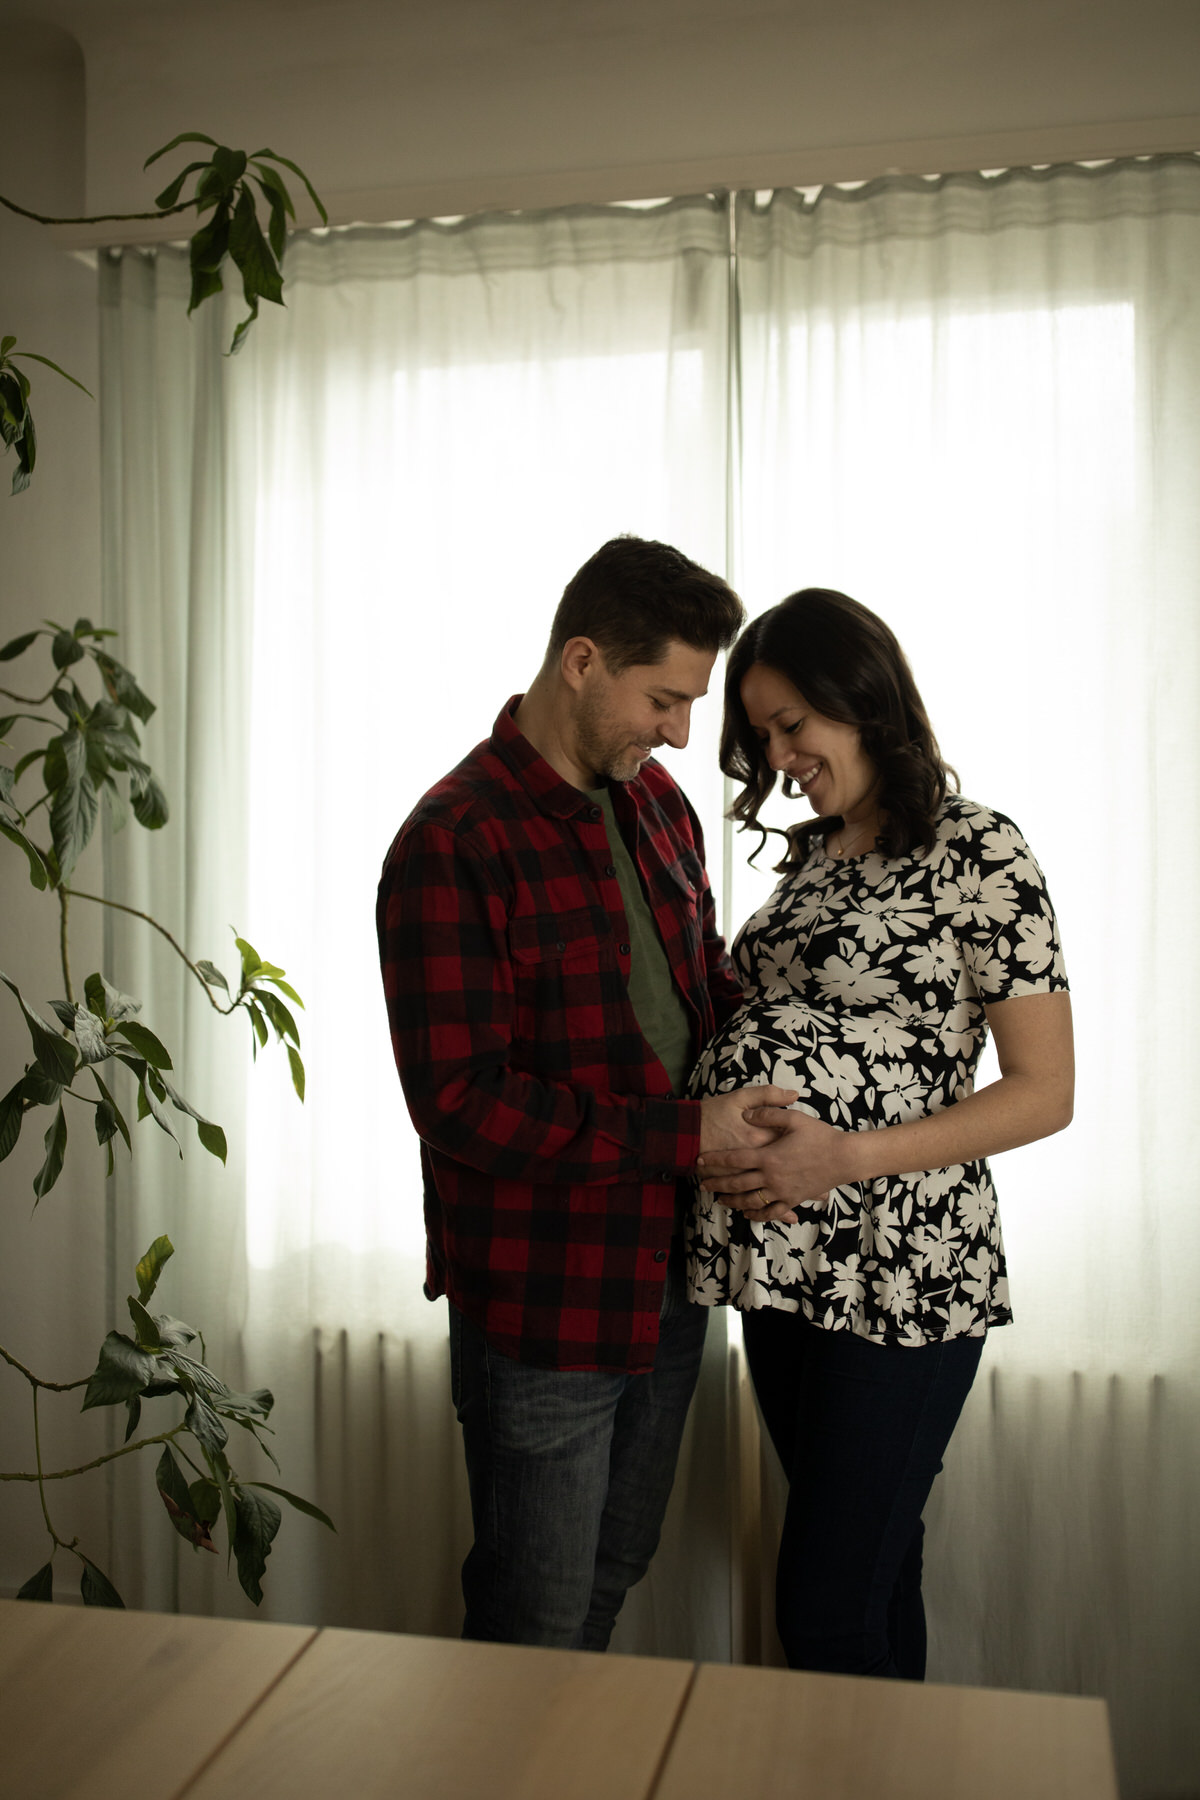 Séance photo couple grossesse dans l'attente de jumeaux à domicile